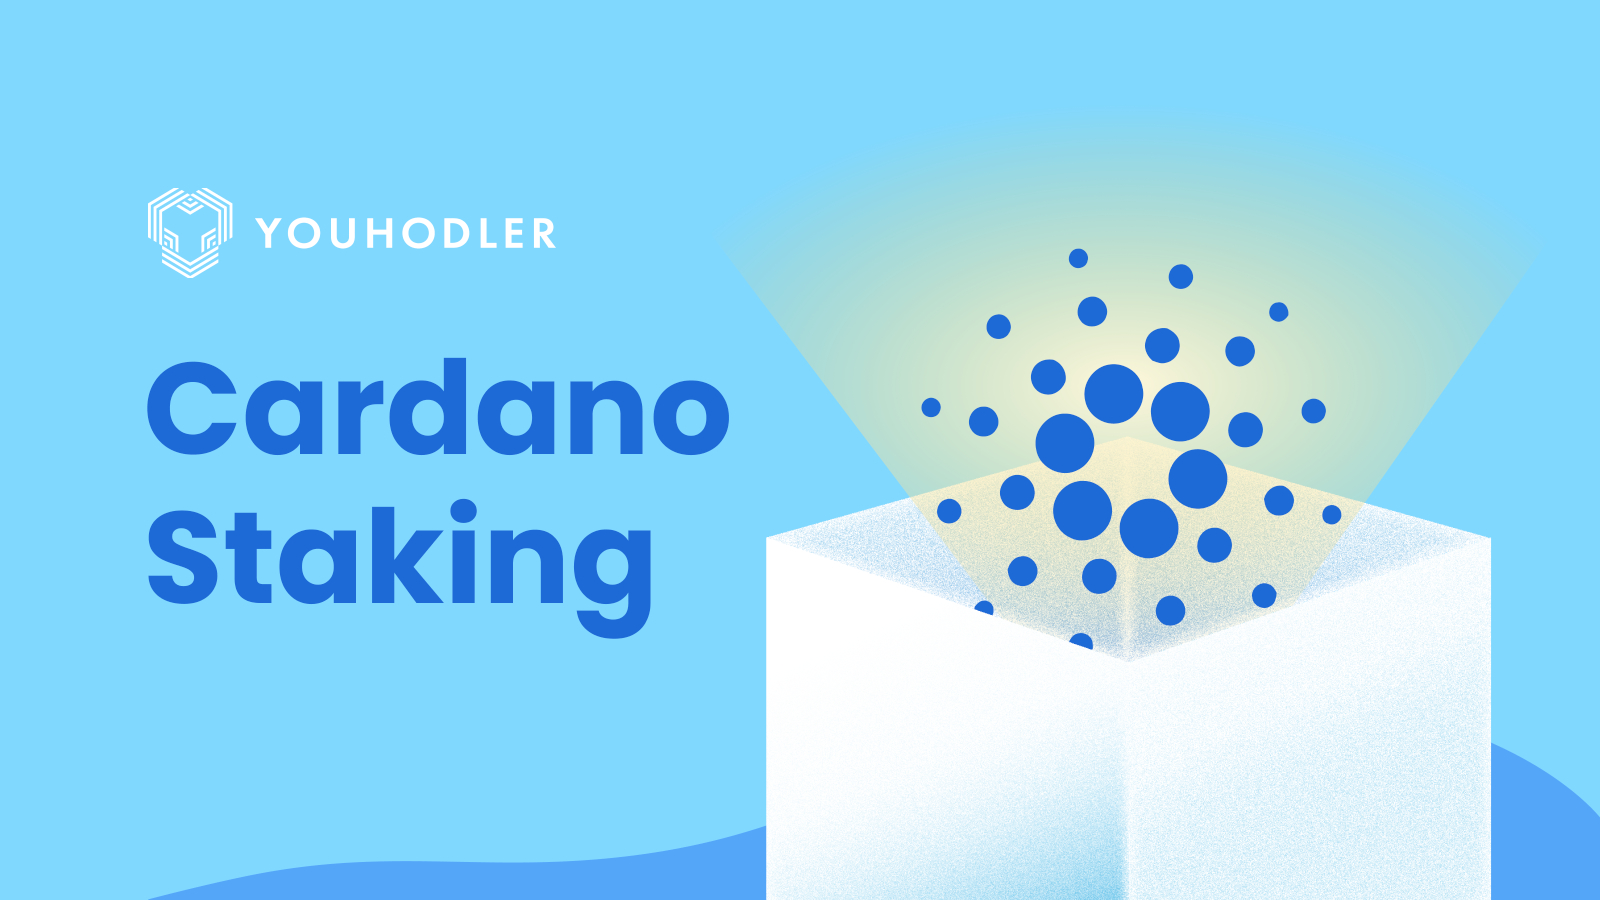 Cardano Staking - Bitcoinsensus